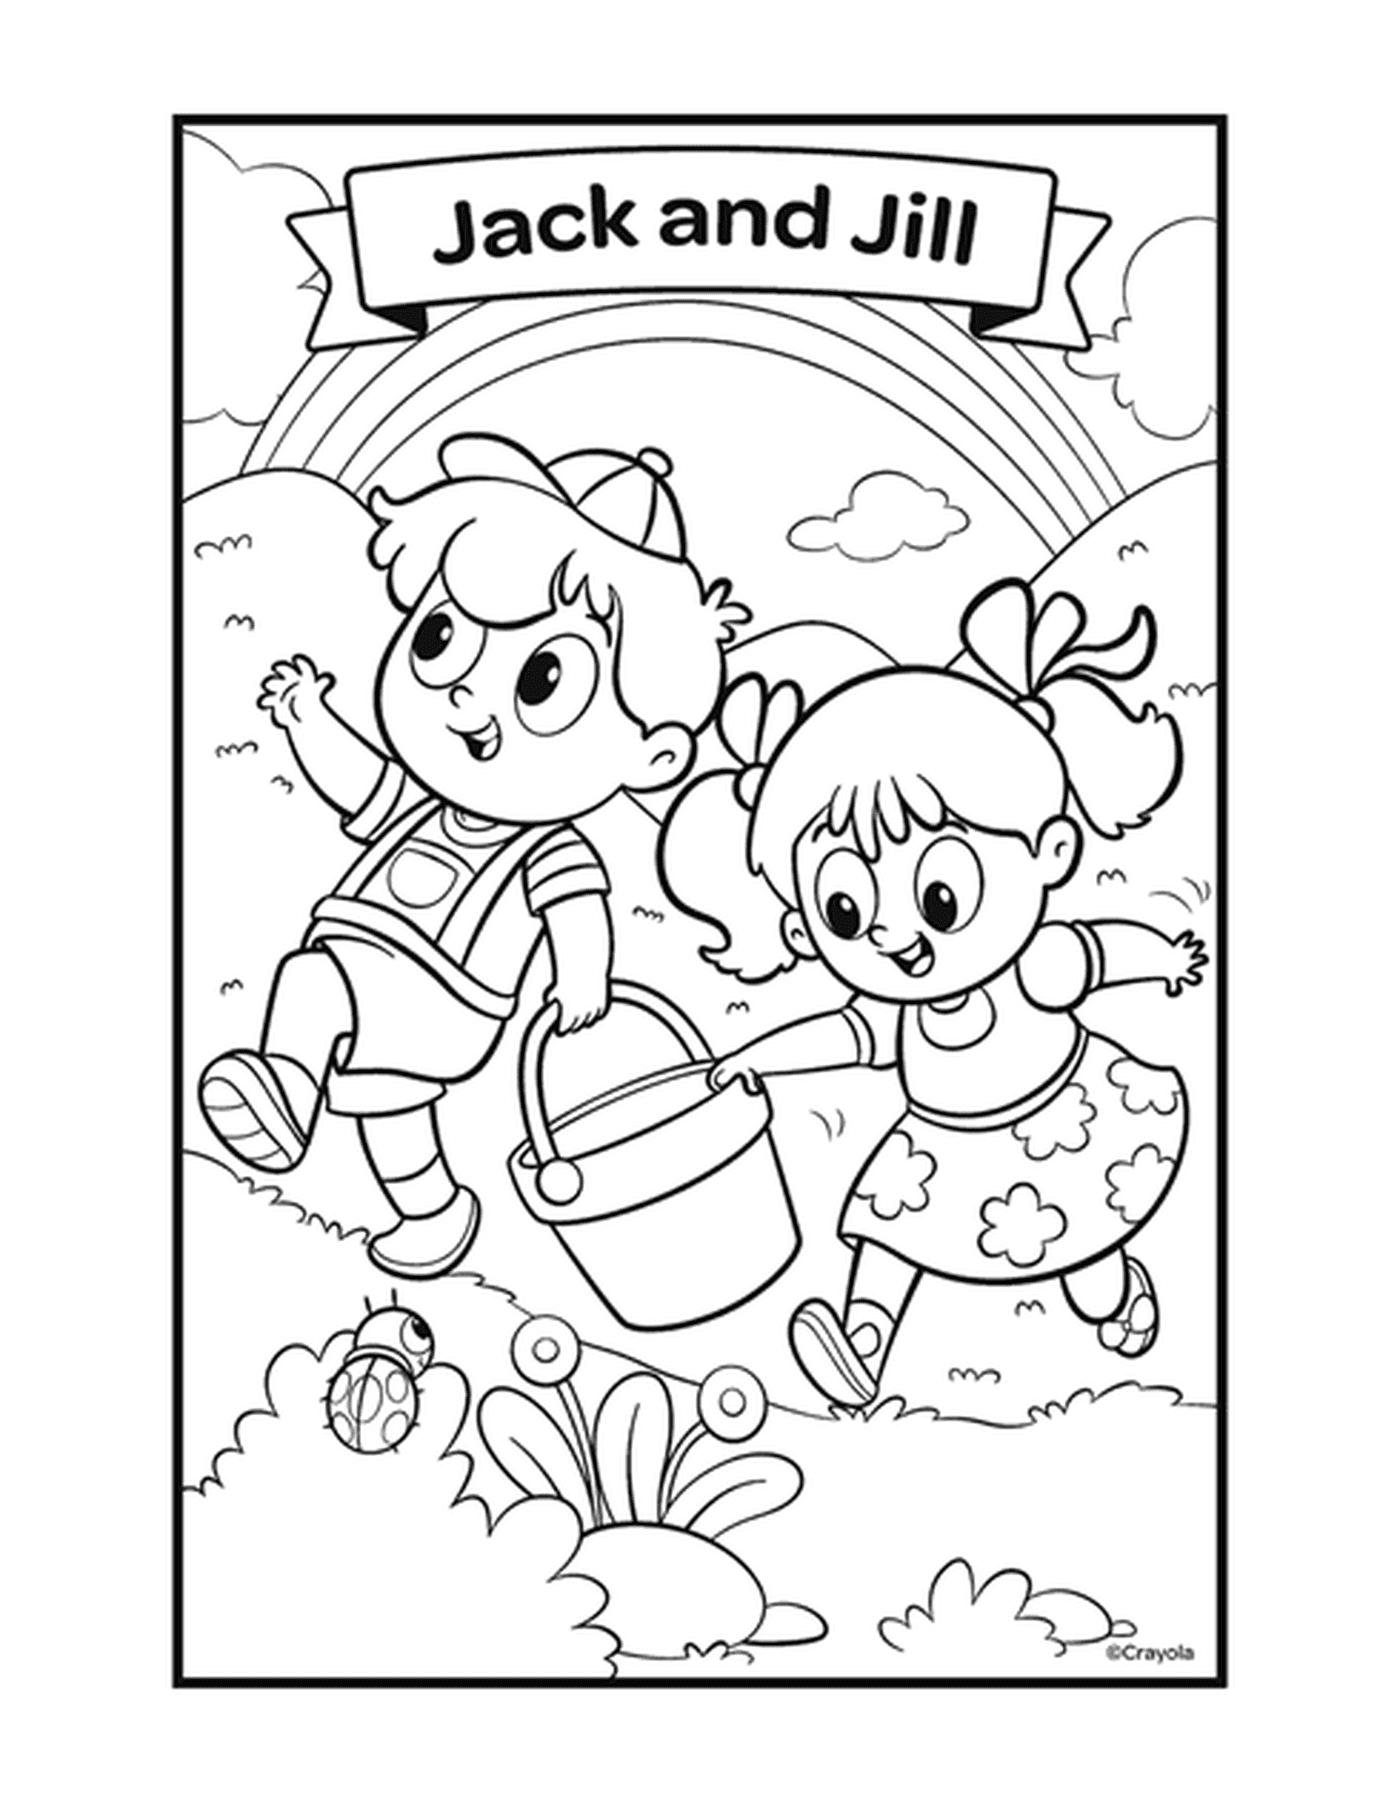  Джек и Джилл с двумя детьми играют с ведром 